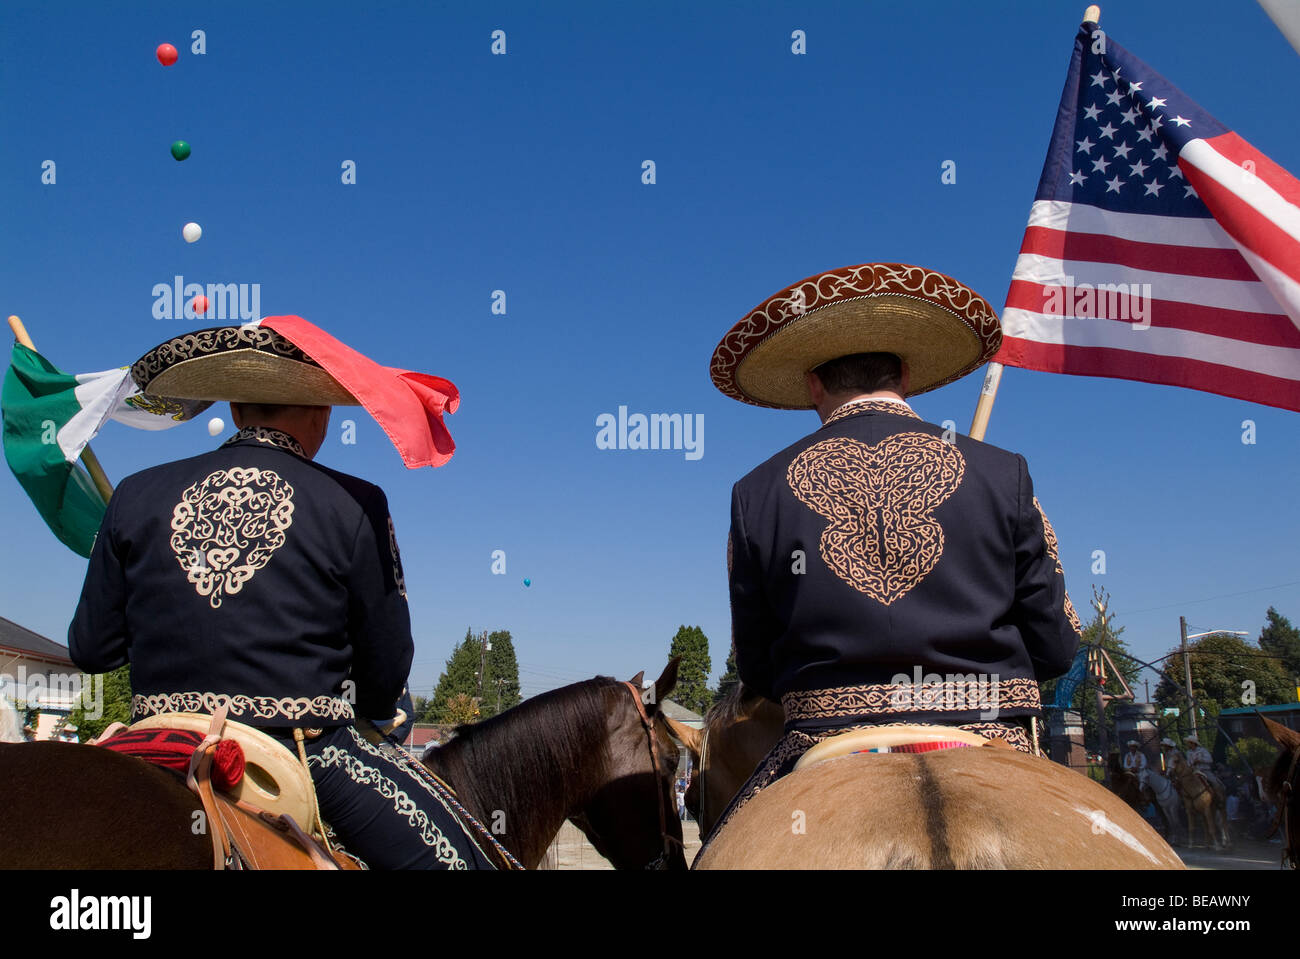 Deux cow-boys américains mexicains tenant des drapeaux américains et mexicains. Banque D'Images